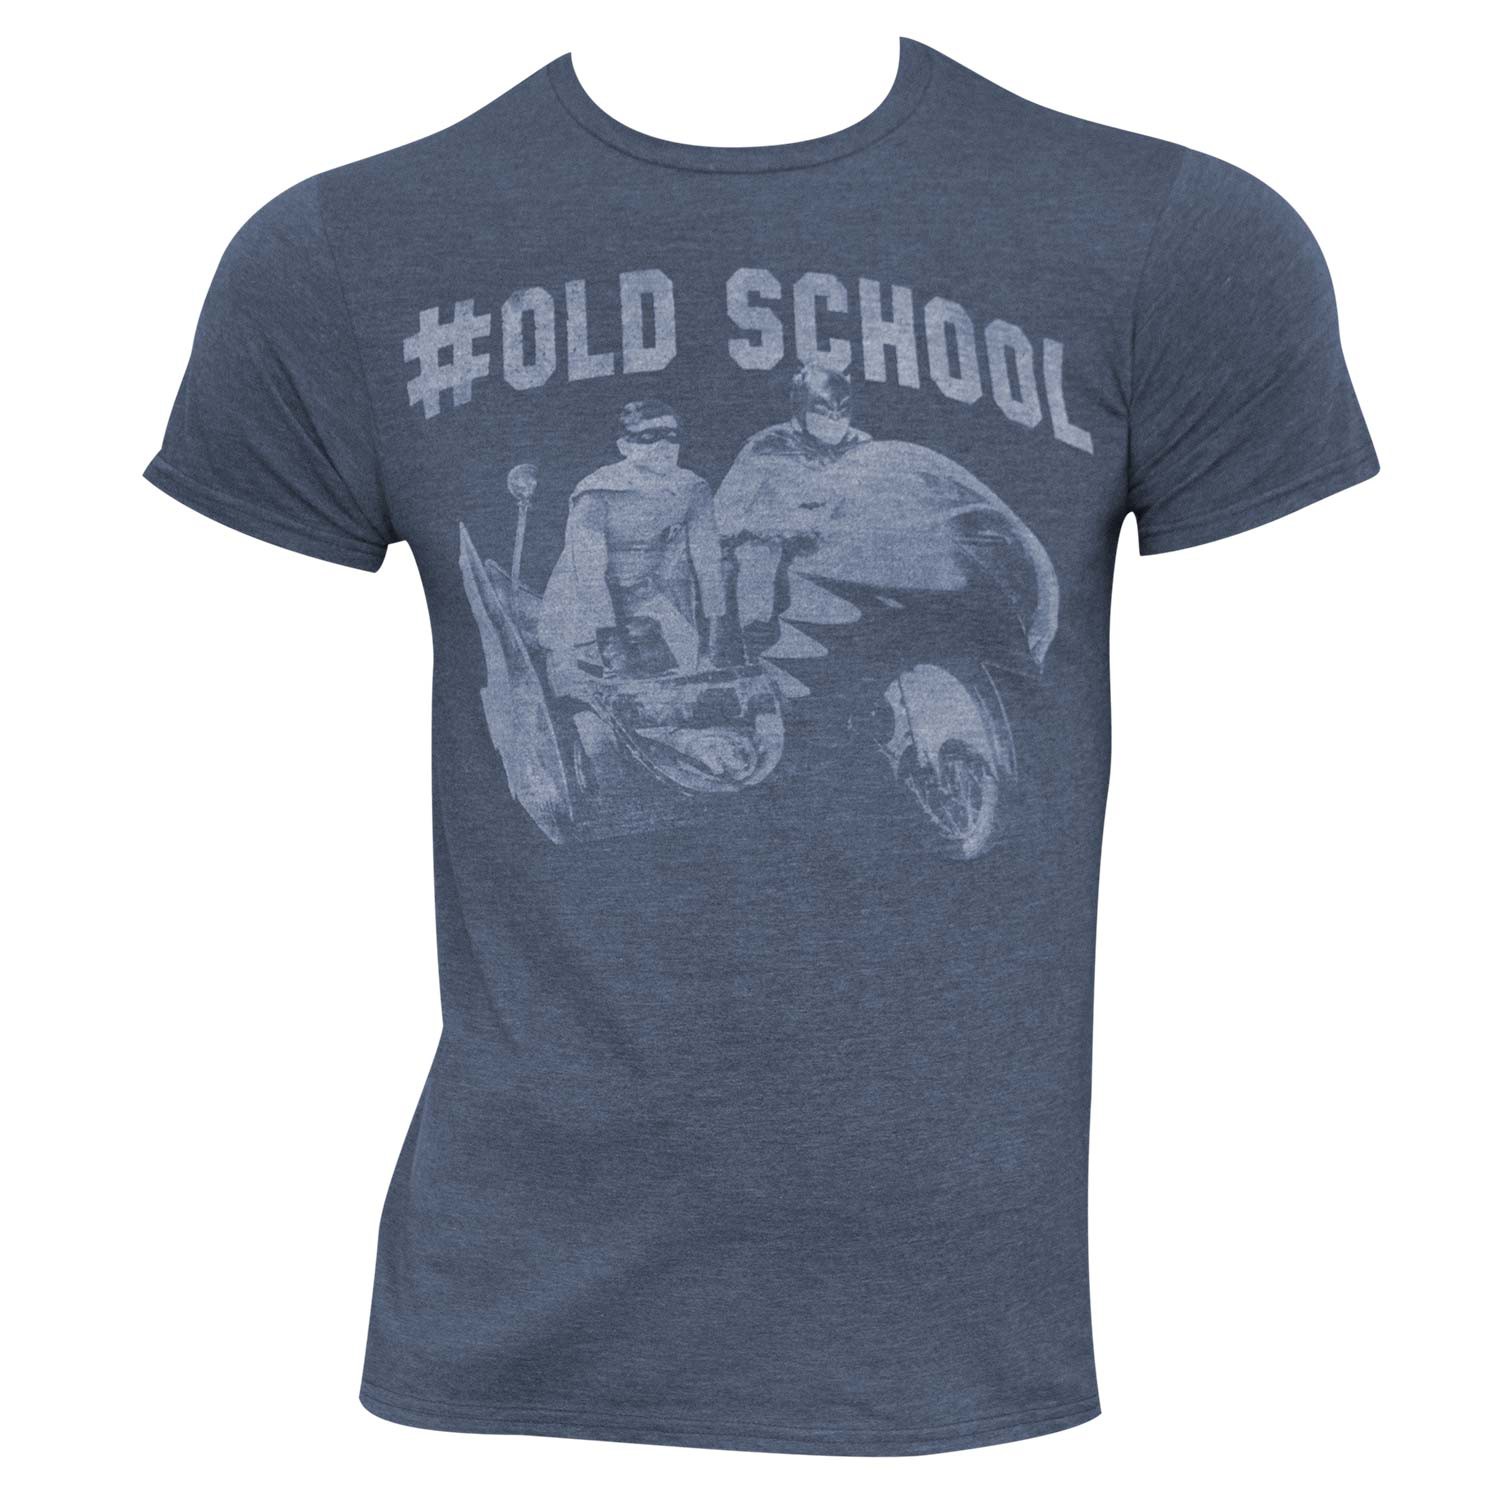 Batman Heather Blue #Old School Tee Shirt